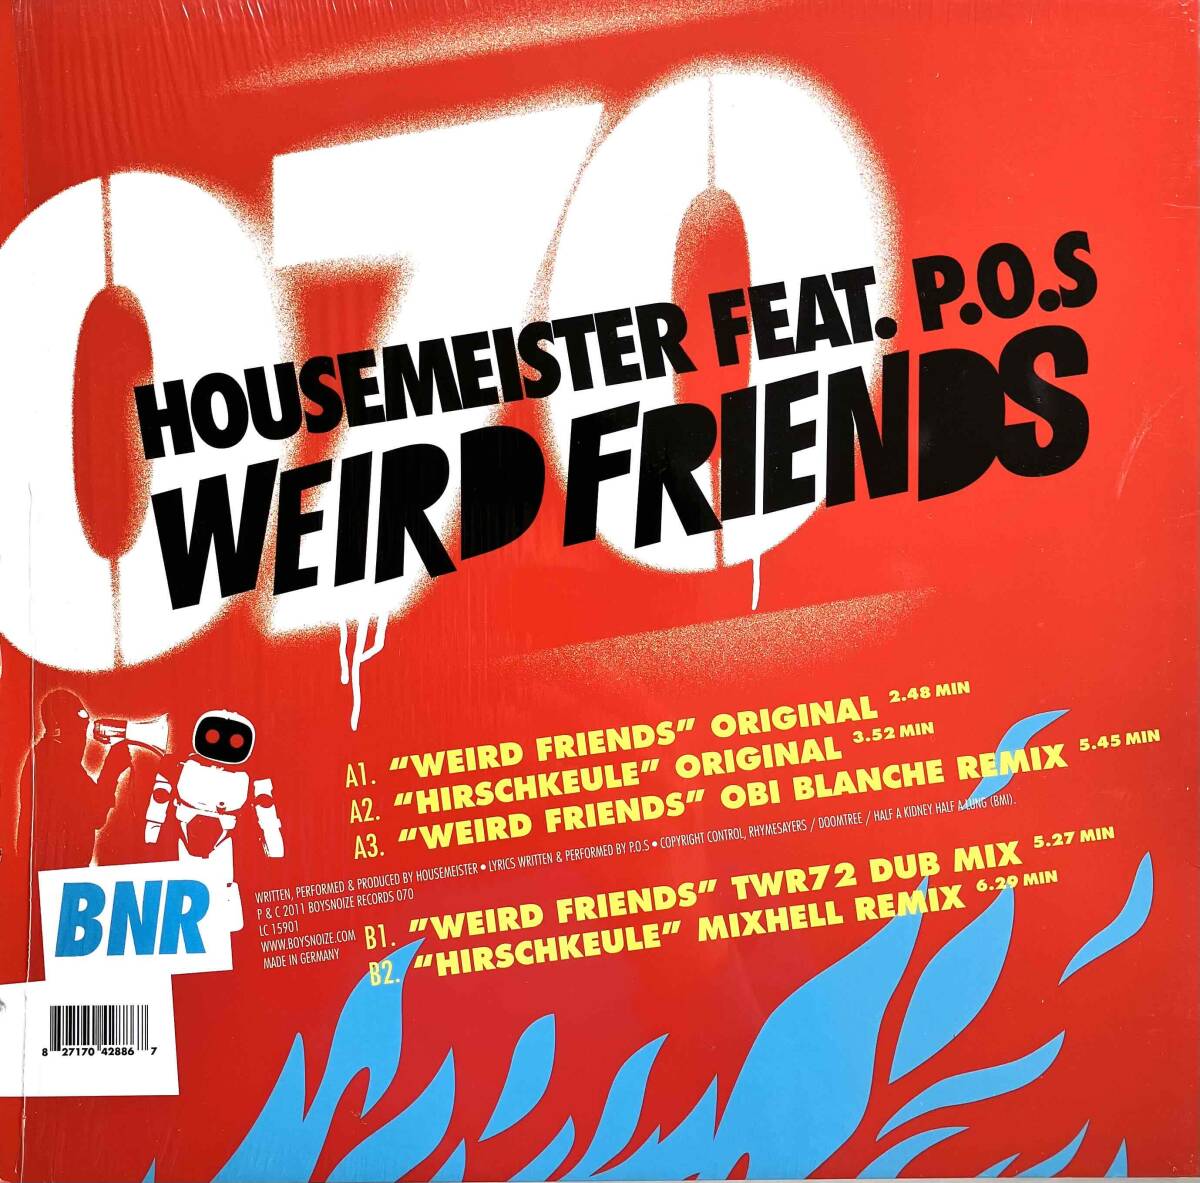 Housemeister Feat. P.O.S / Weird Friends 【12''】2011 / GER / Boysnoize Records / BNR070 / 検索：333yen vinylの画像2